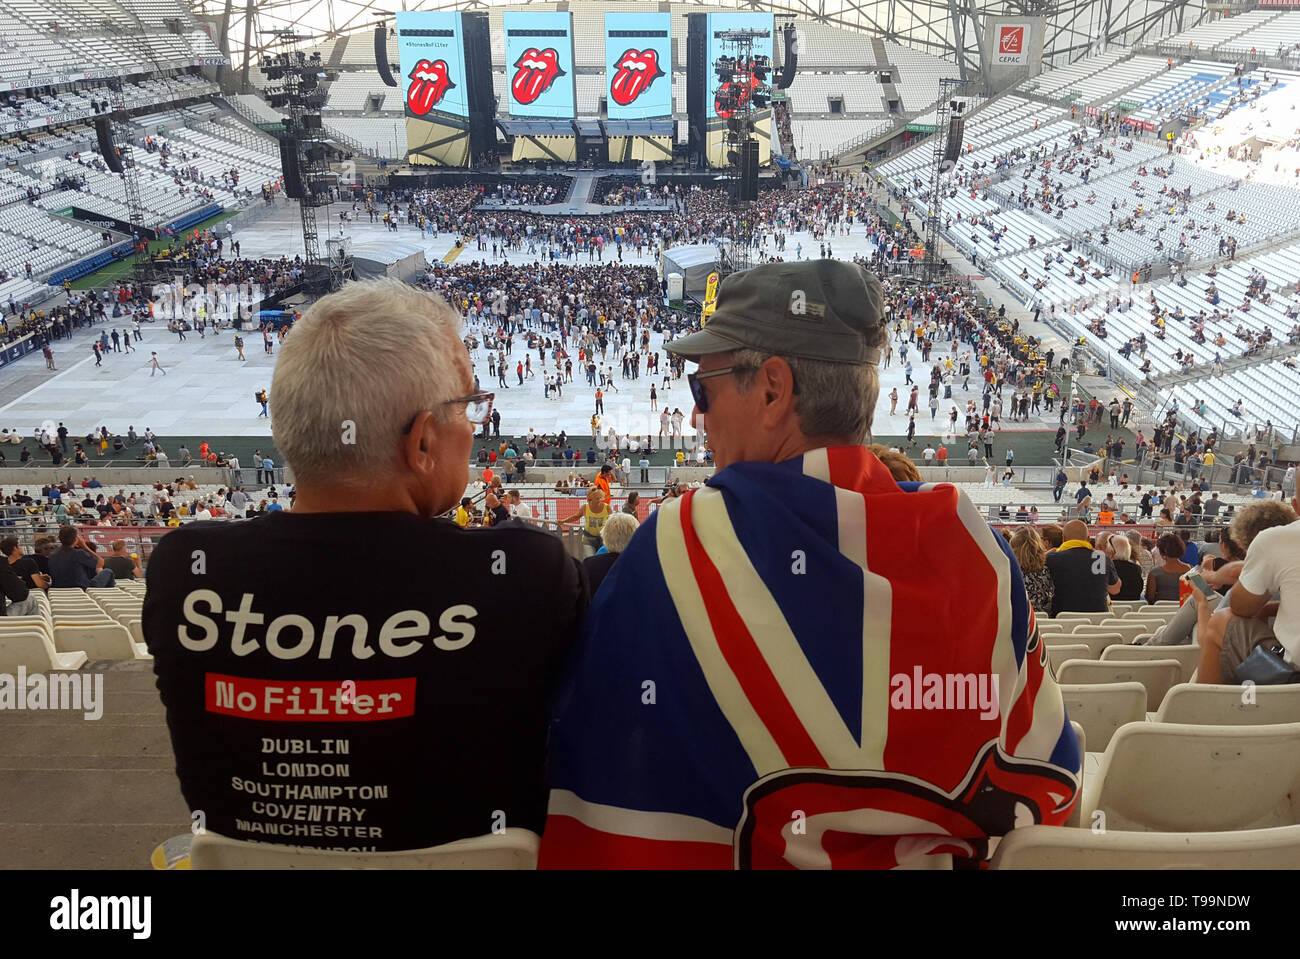 Rolling Stones Rock Music Fans, un drapé de l'Union Jack Flag, attendre le début d'un concert des Rolling Stones pendant le légendaire groupe's Aucun filtre tournée dans le Stade Vélodrome Marseille (26 juin 2018) Banque D'Images